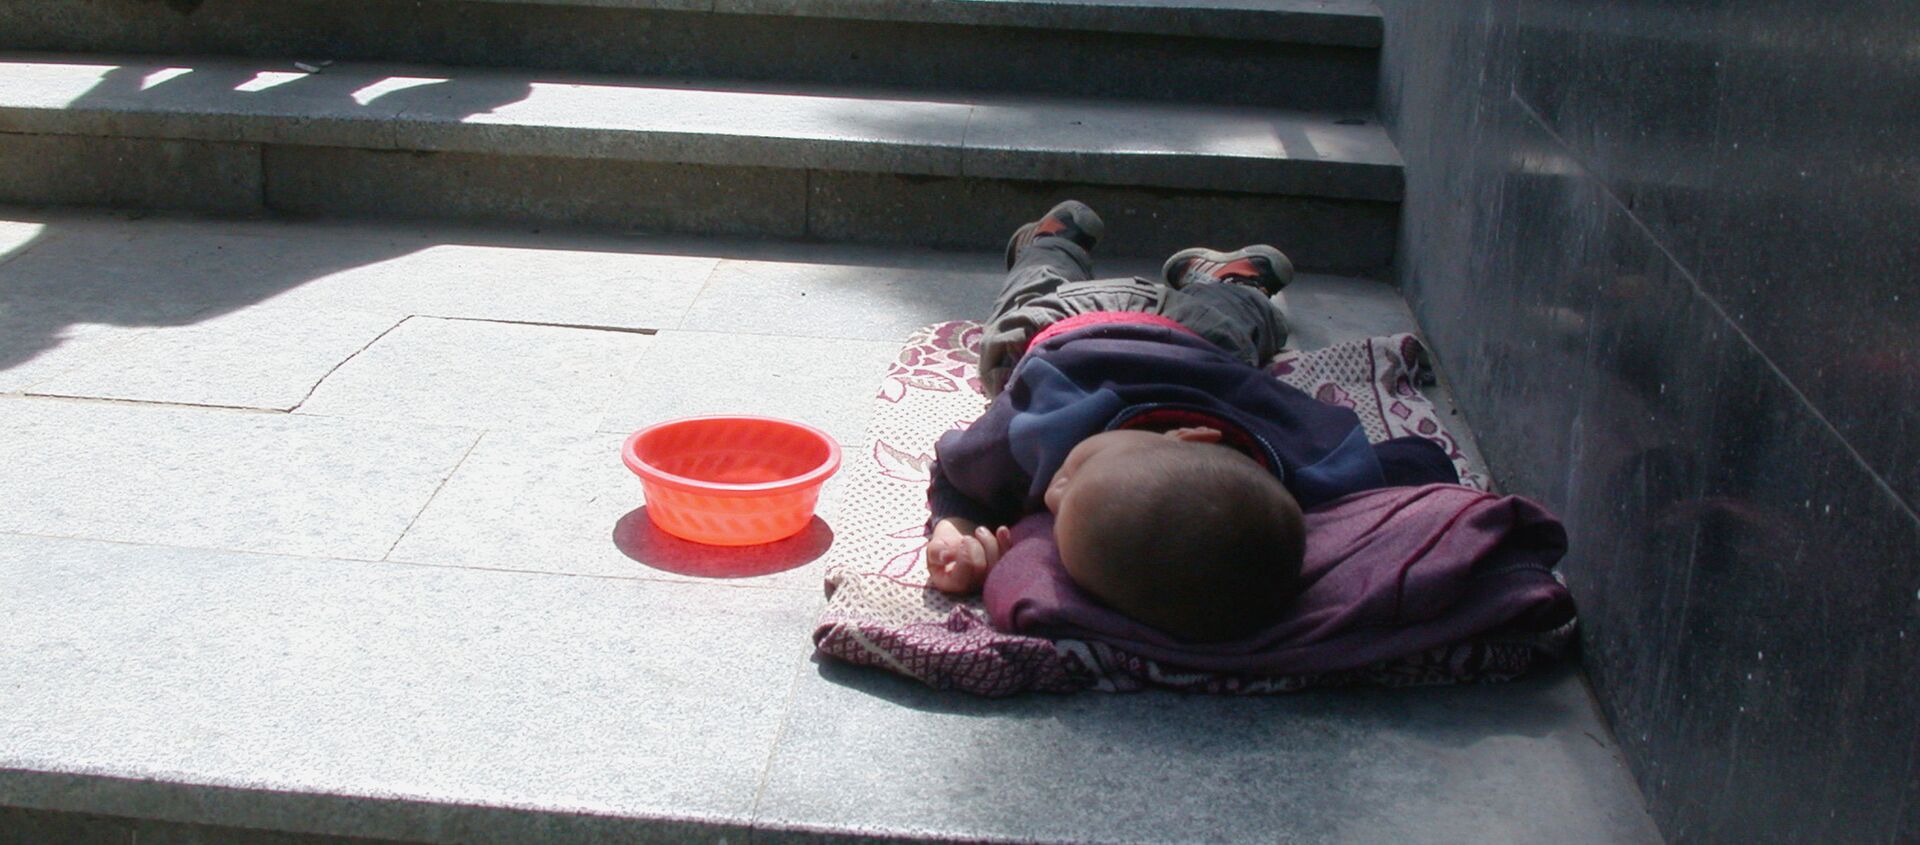 Бездомный ребенок - Sputnik Азербайджан, 1920, 16.04.2021